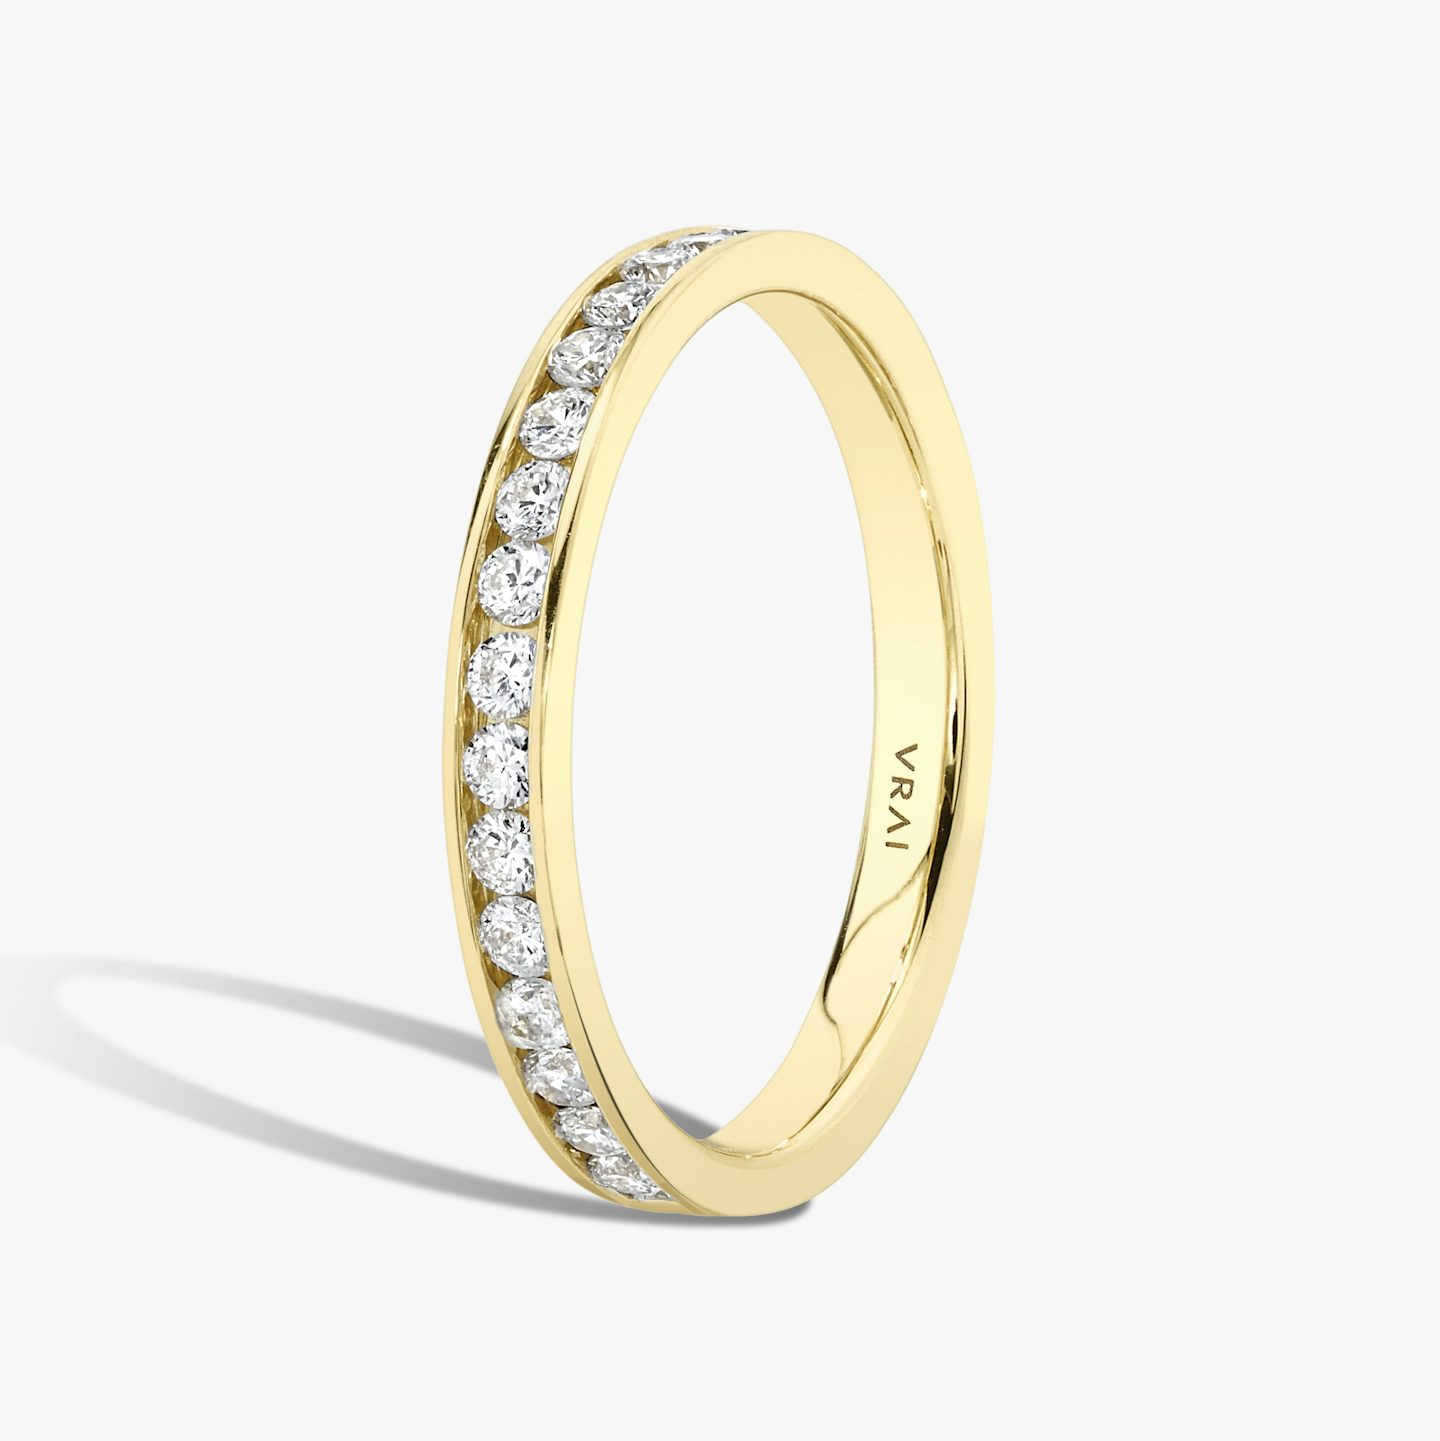 Anillo Devotion | Brillante | 18k | Oro amarillo de 18 quilates | Estilo del anillo: Medio círculo de diamantes | Ancho de banda: Grande